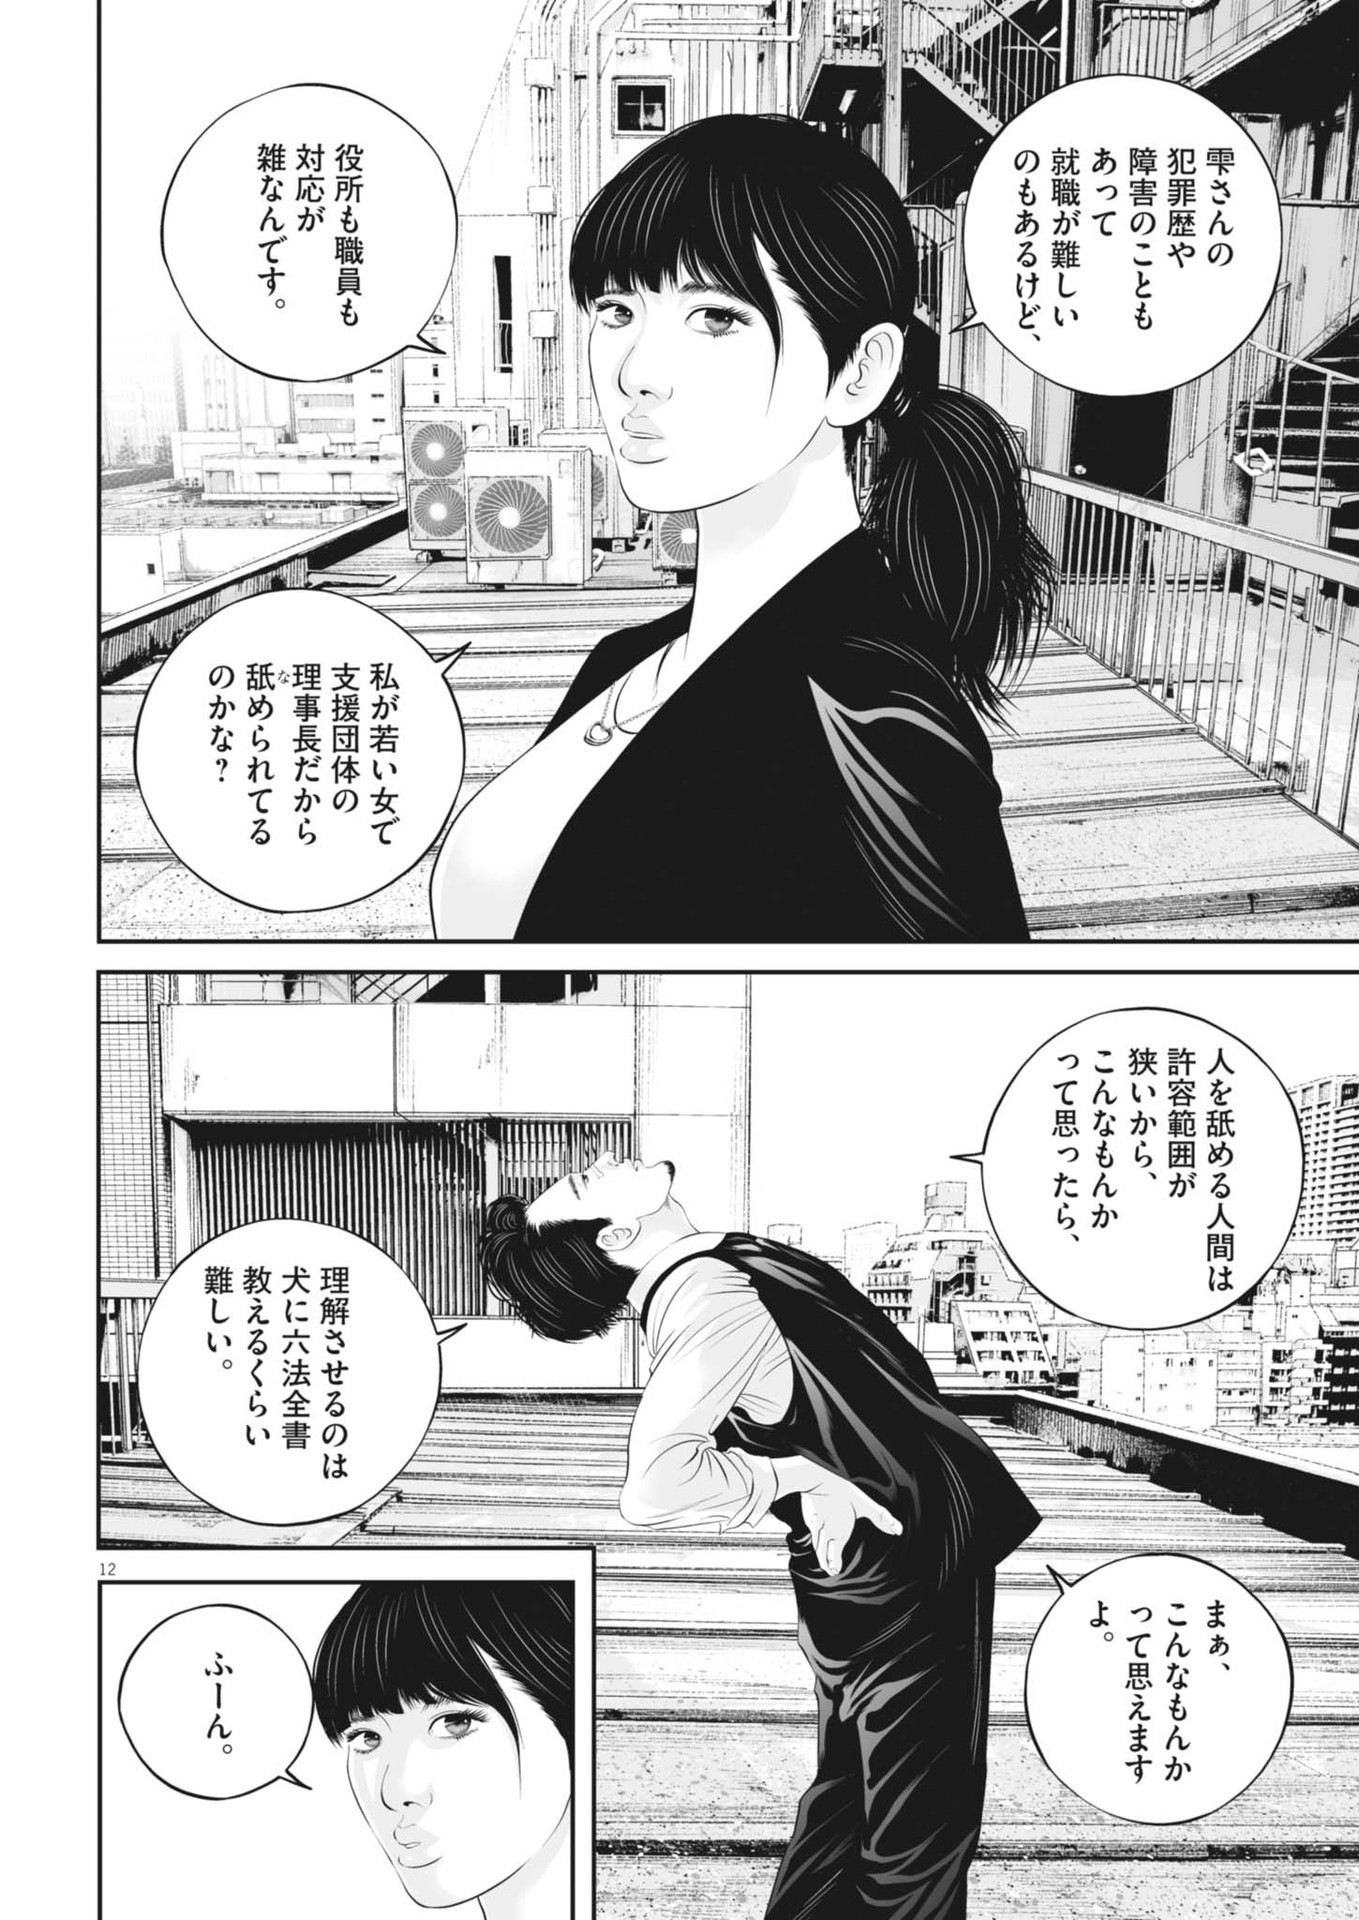 Kujou no Taizai - Chapter 99 - Page 12